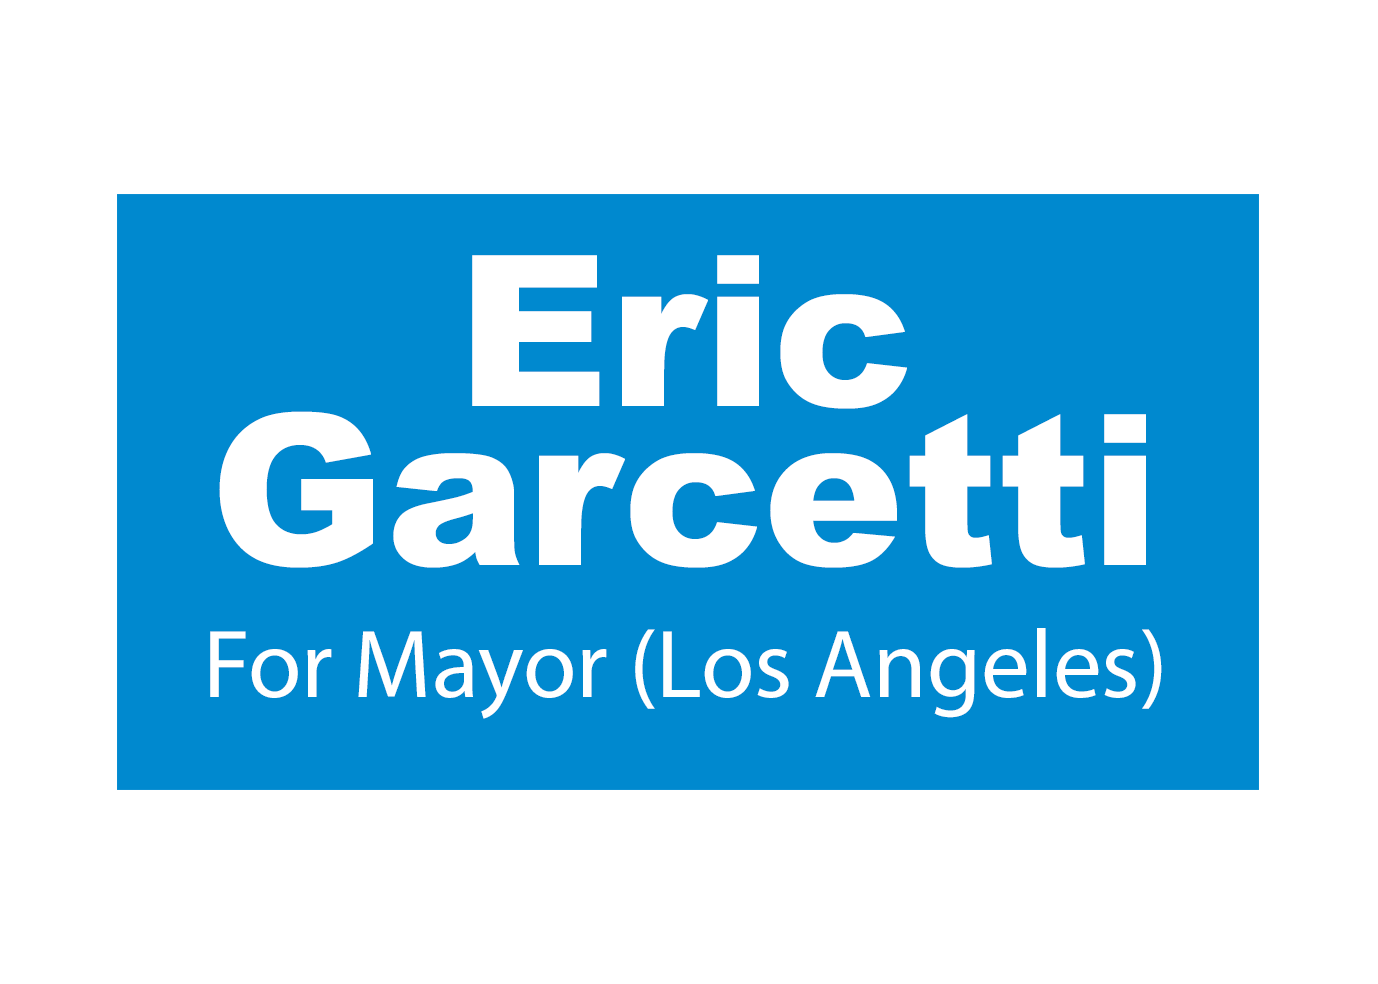 Eric Garcetti for Mayor logo